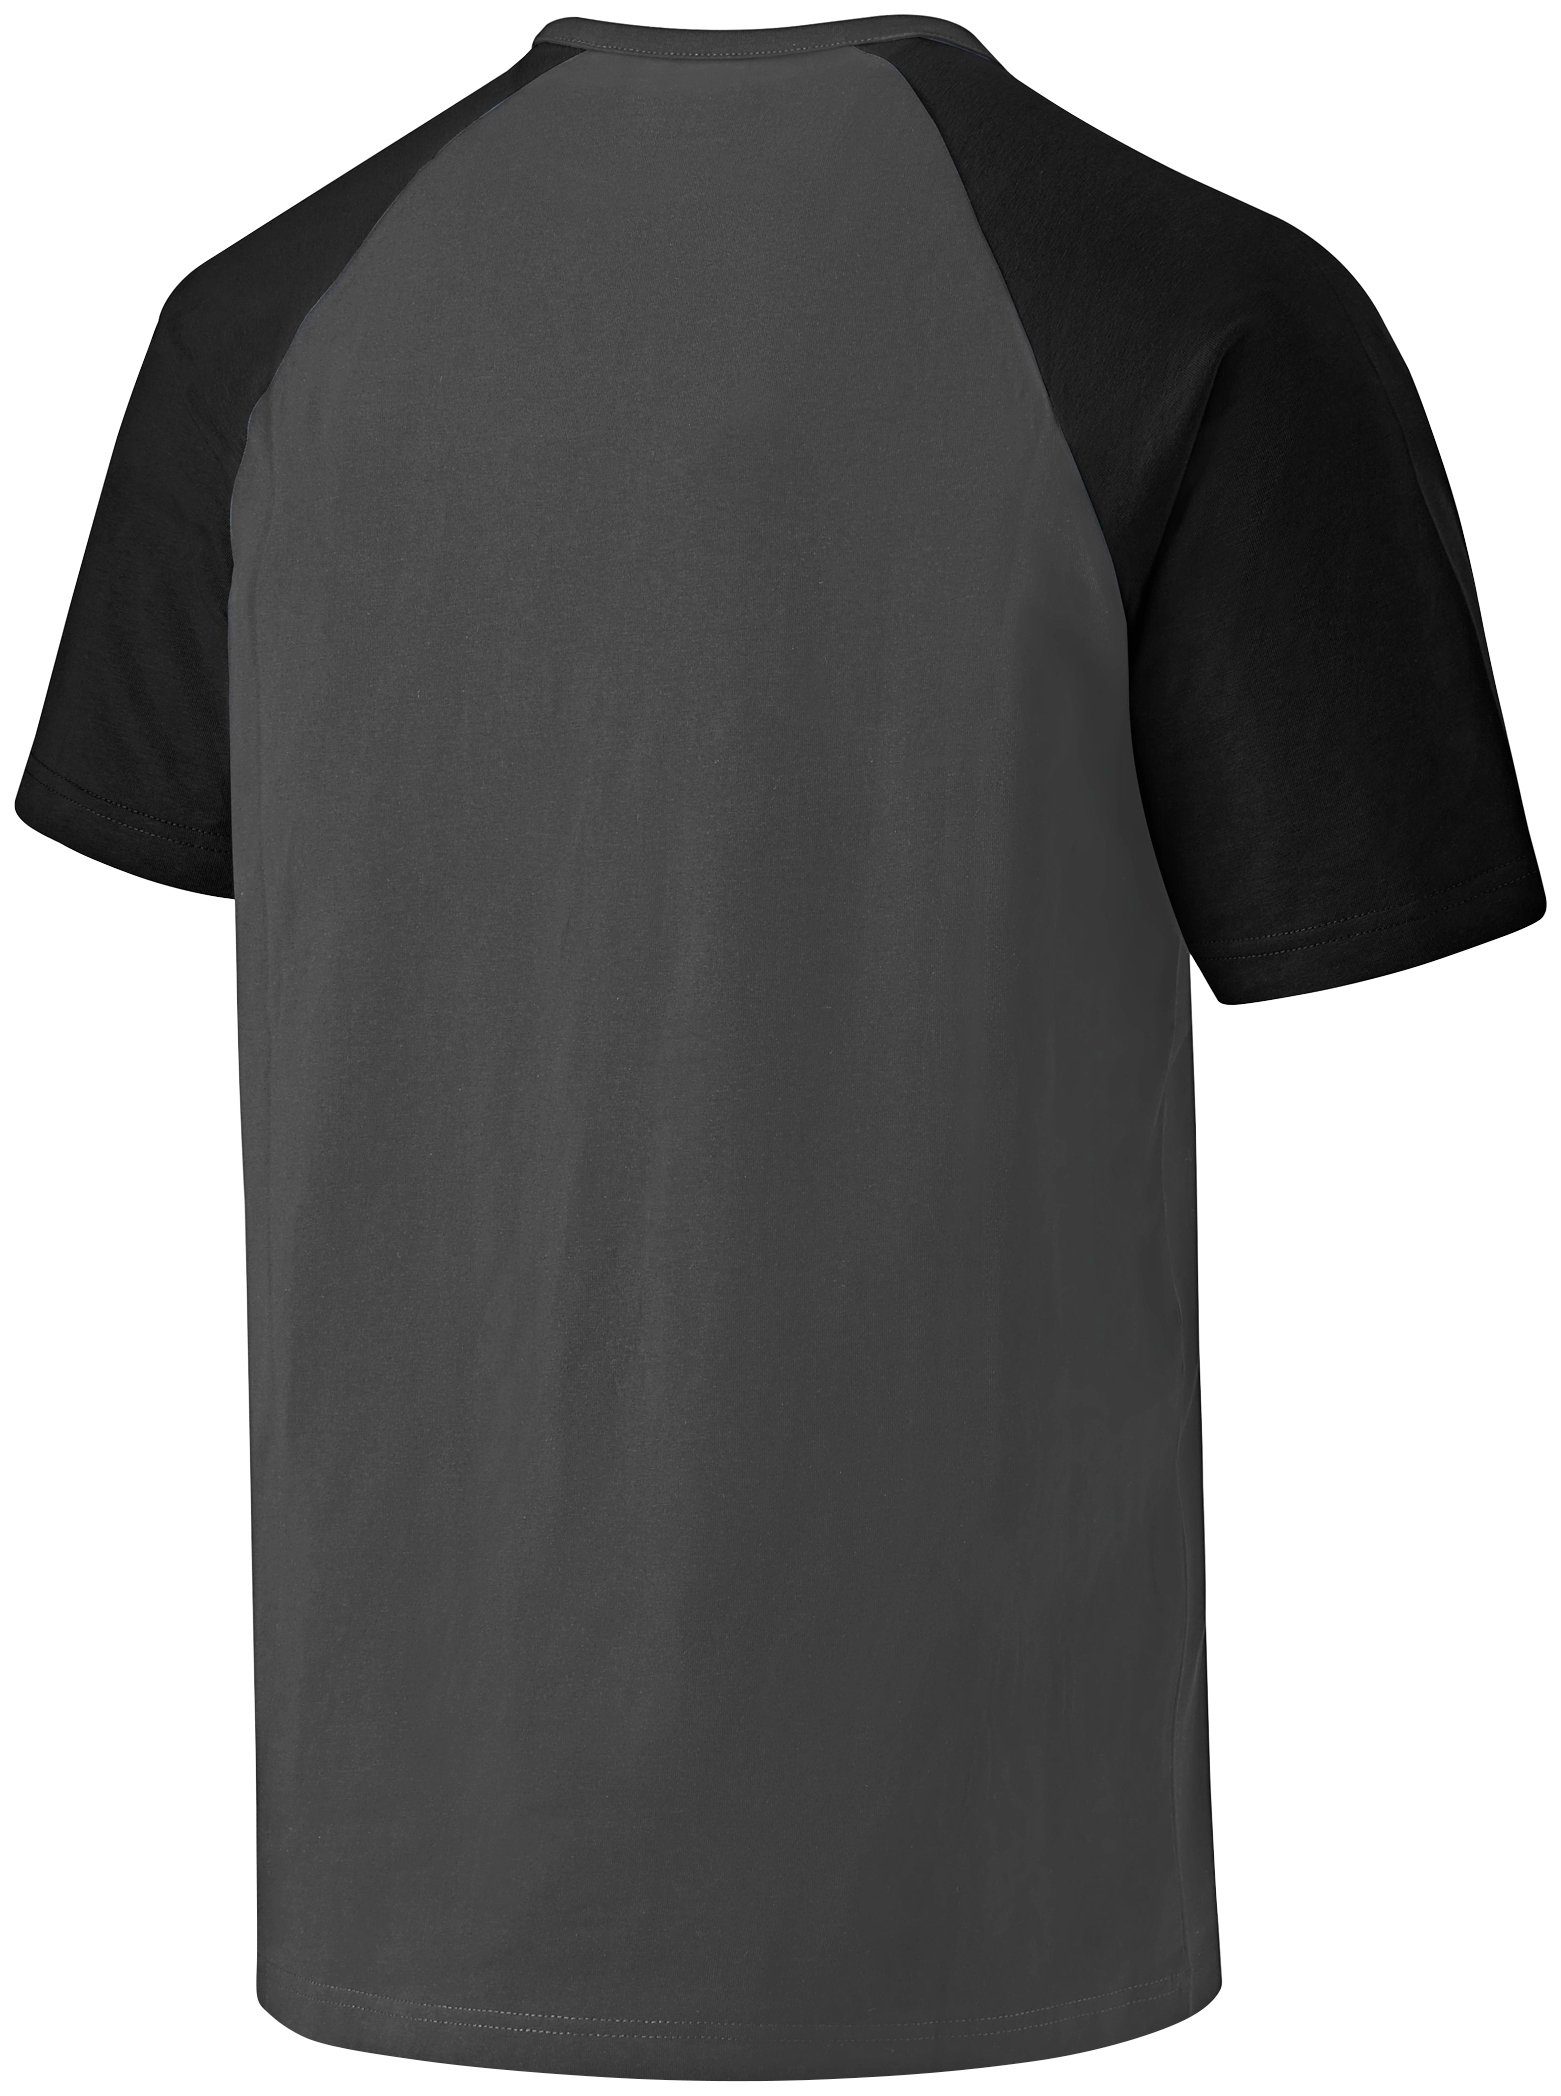 Herren Shirts Dickies T-Shirt Gr. S - 3XL